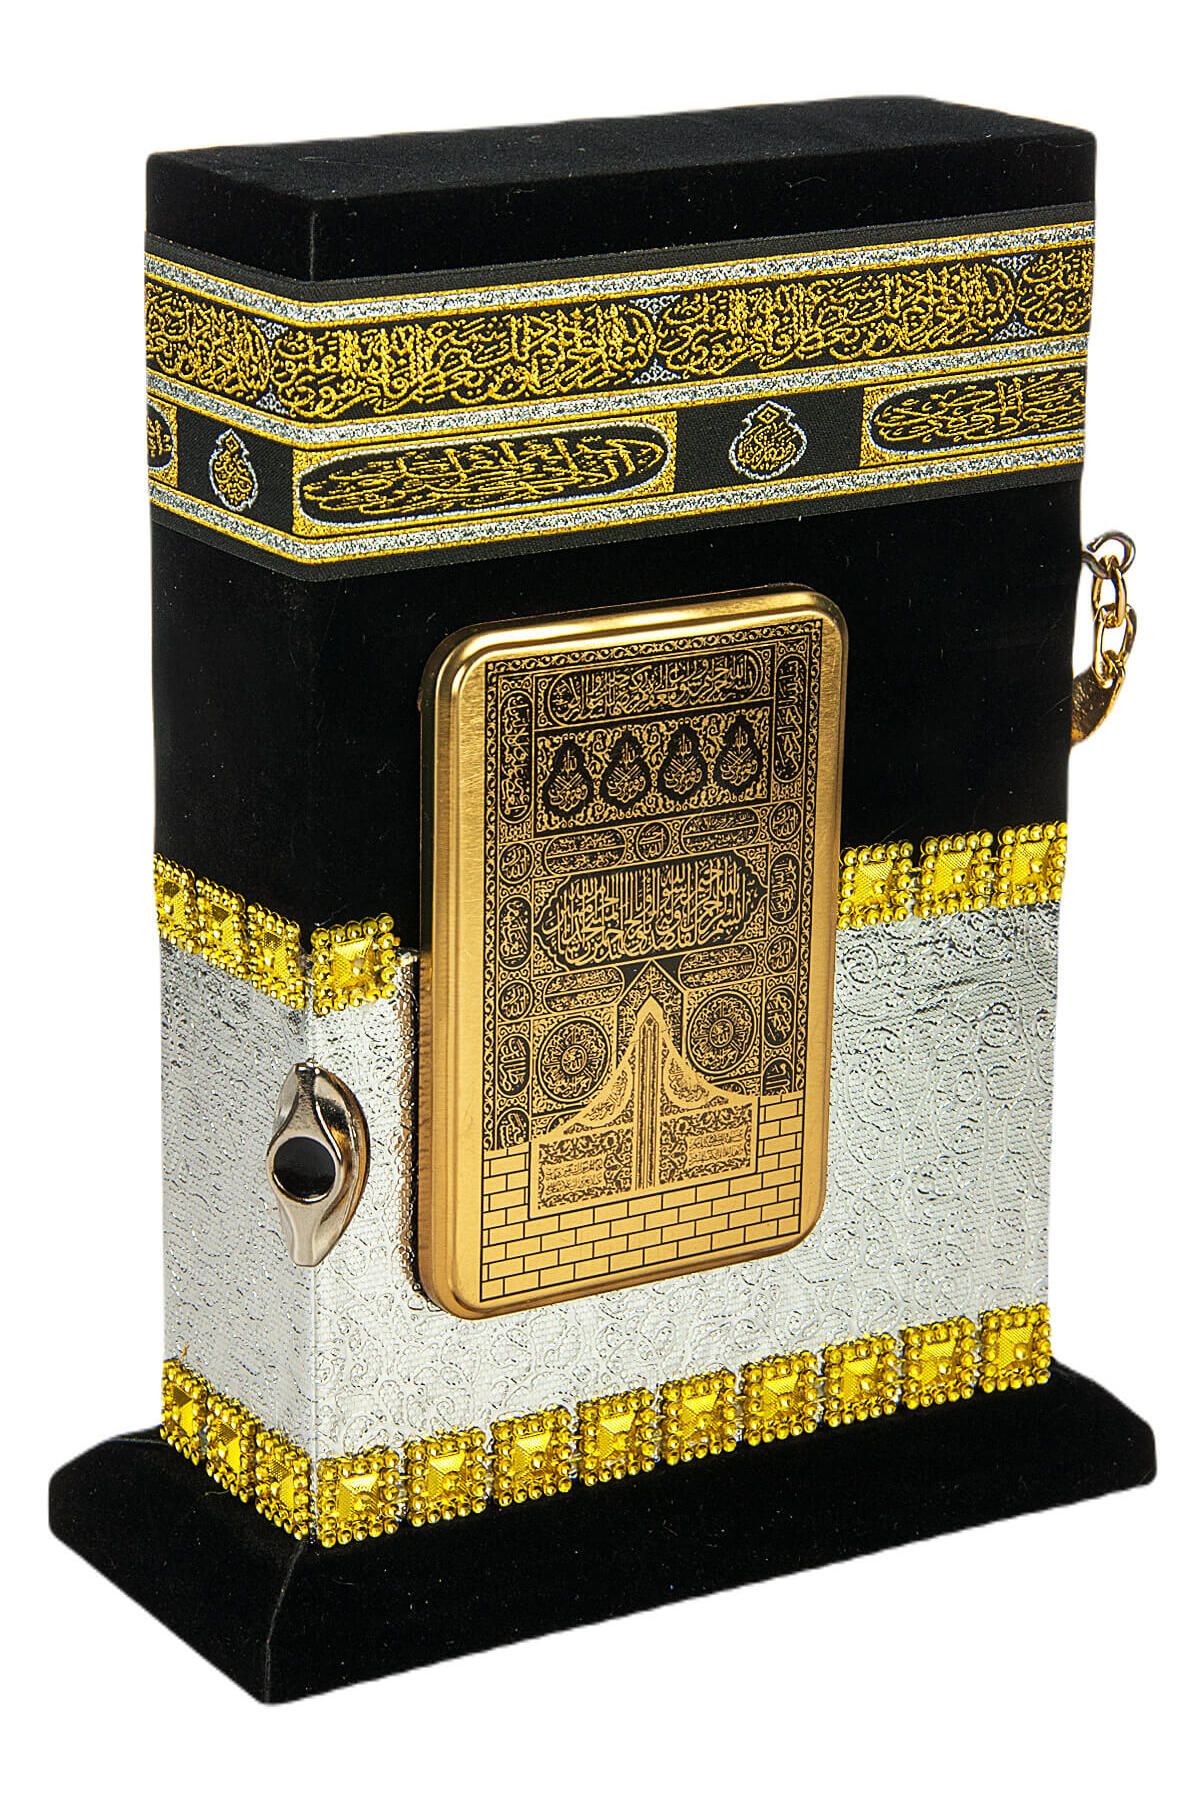 Ayfa Publications Священный Коран с каменной моделью Каабы — мальчик Хафиз — серебро 4897654301875